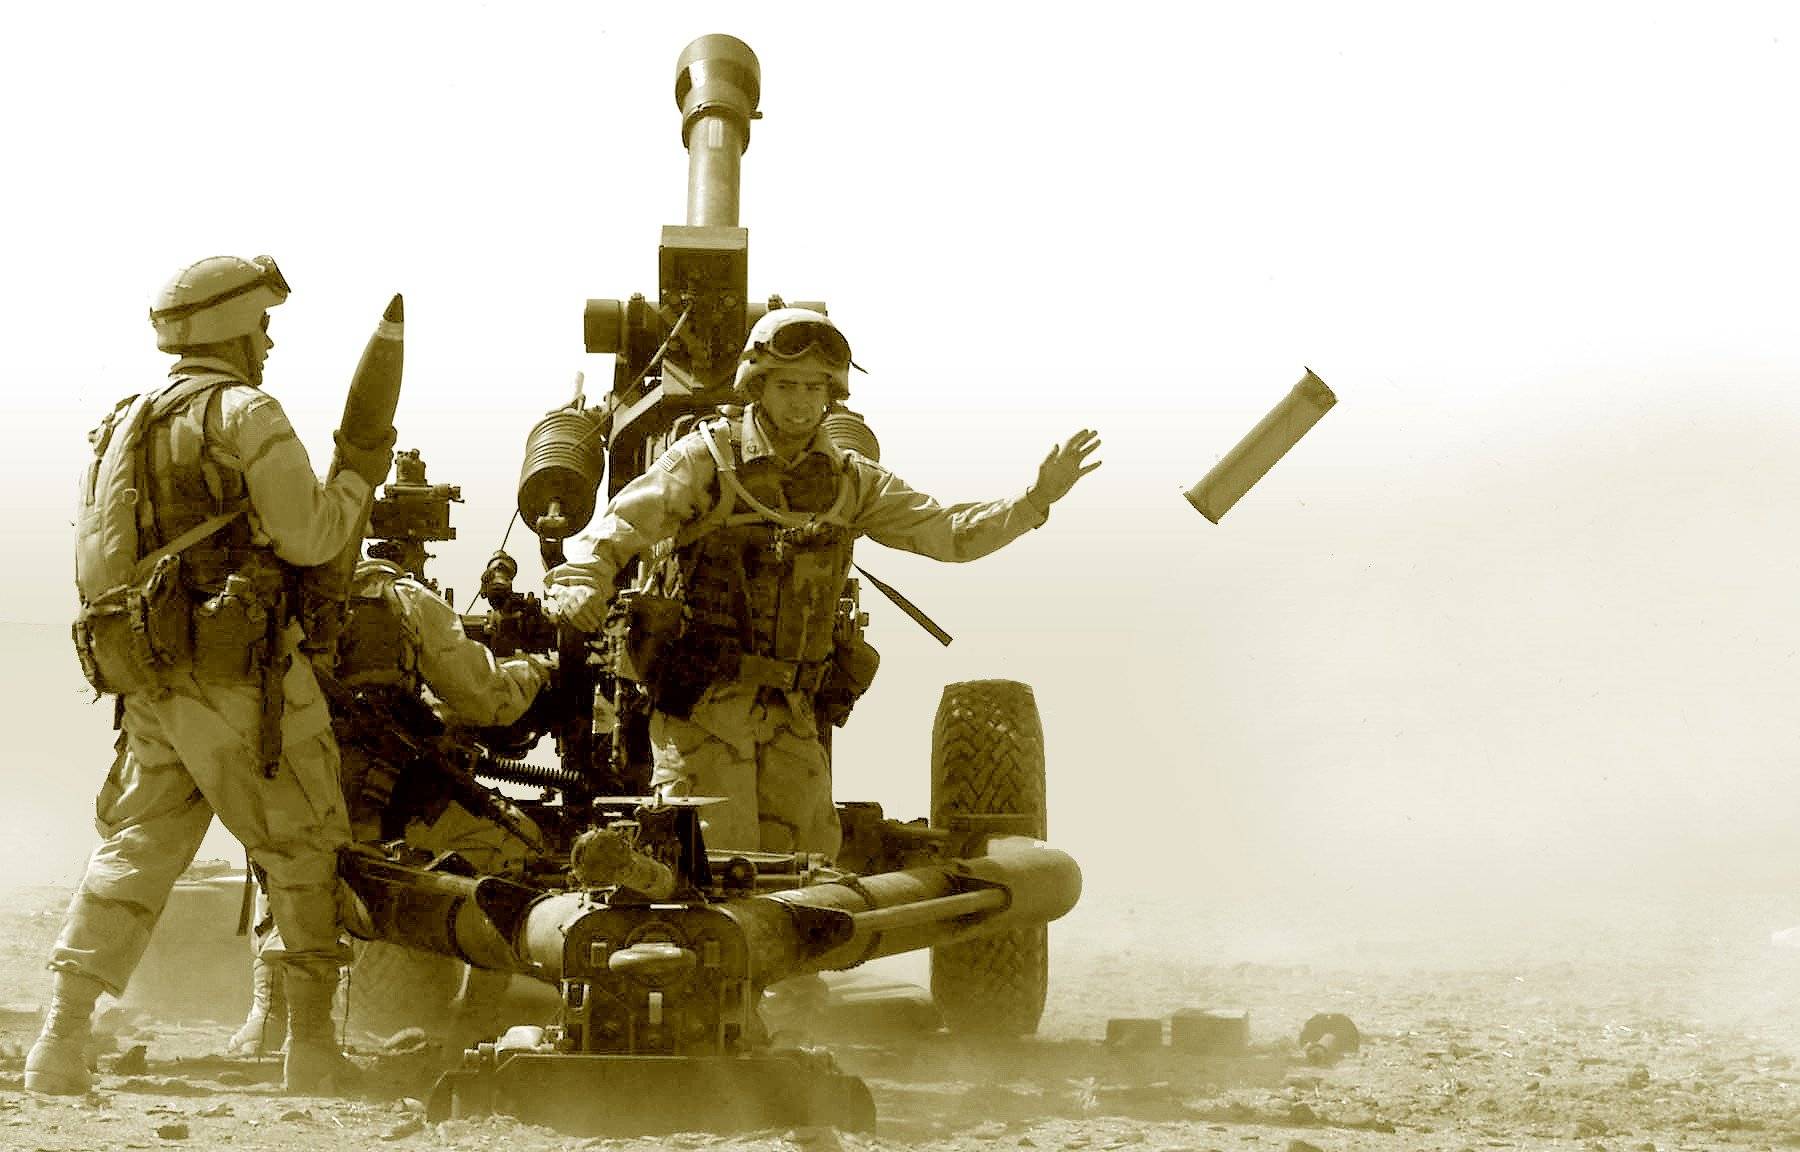 M119 howitzer during Operation Iraqi Freedom, January/February 2003